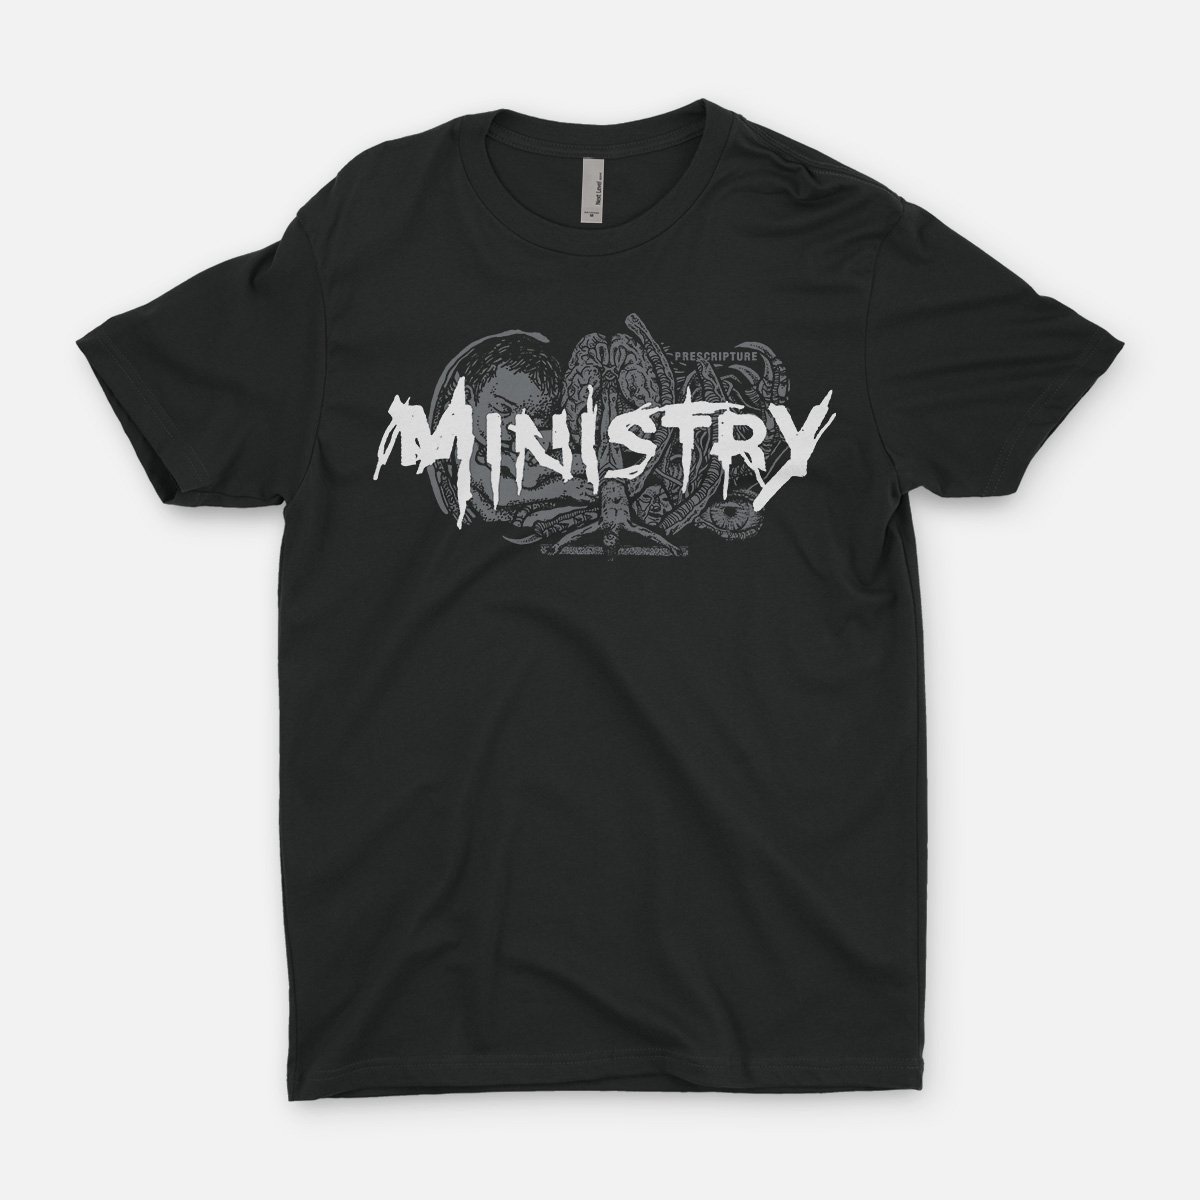 Ministry "Prescripture" T-Shirt